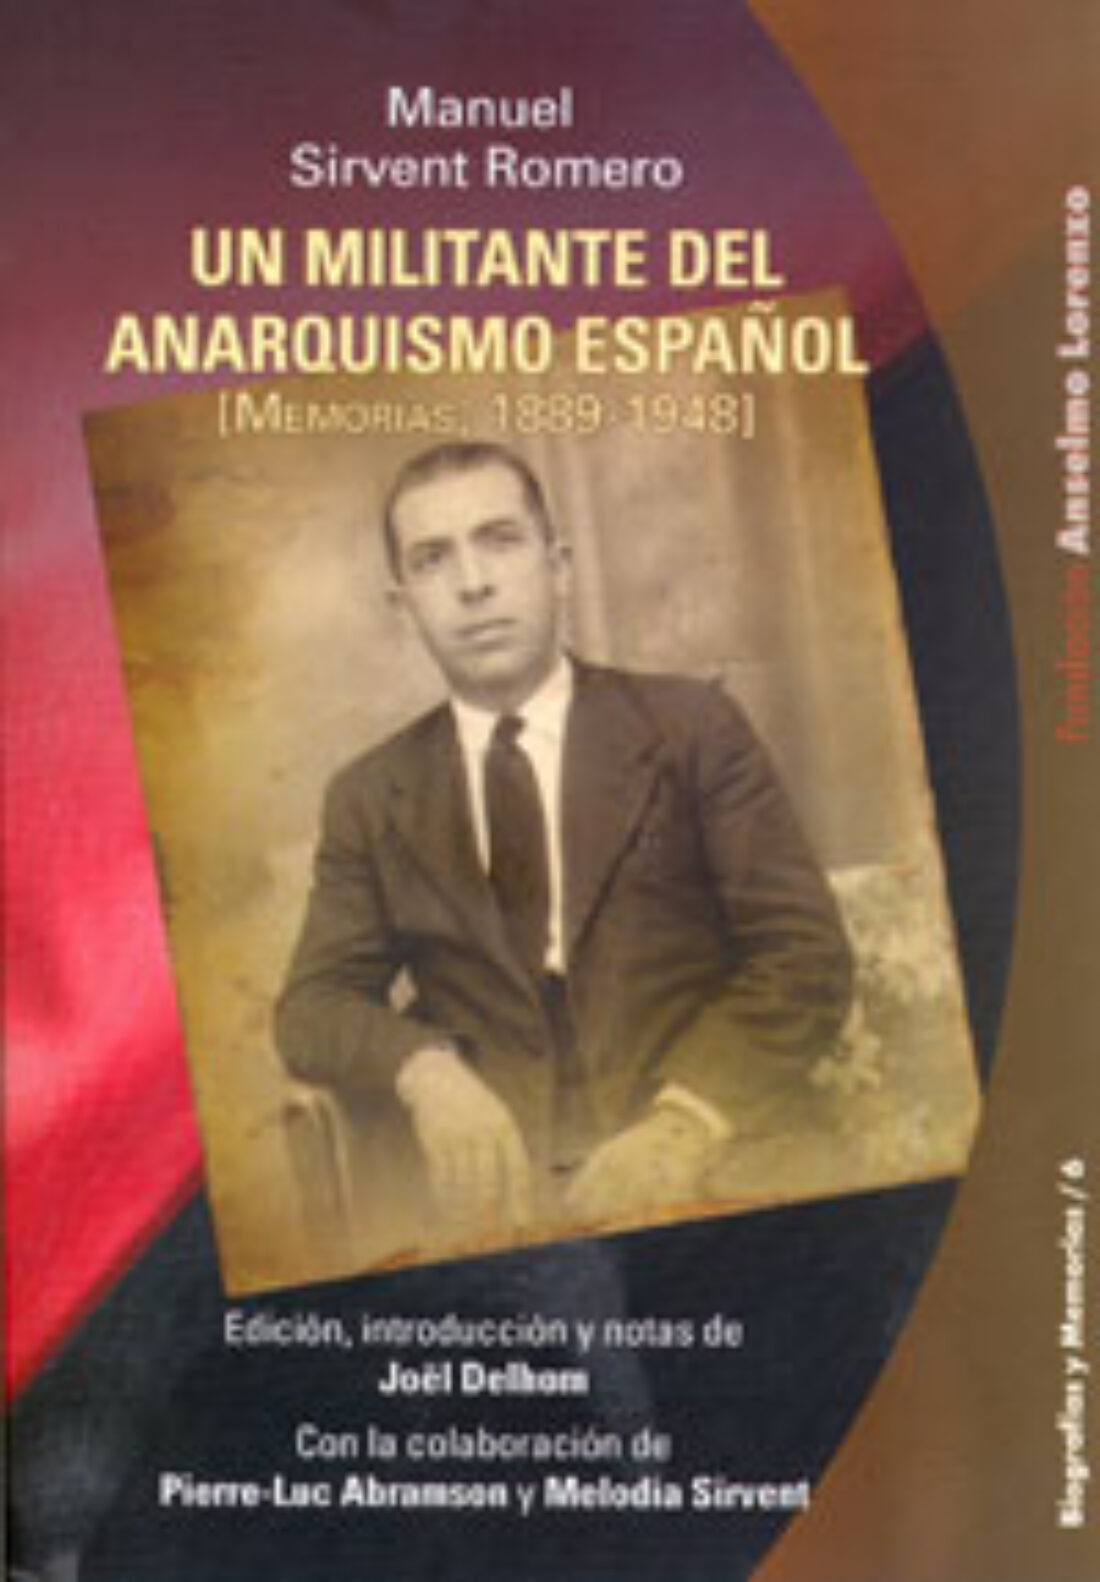 Presentación de «Manuel Sirvent Romero. Un militante del anarquismo español (memorias 1889-1948)»